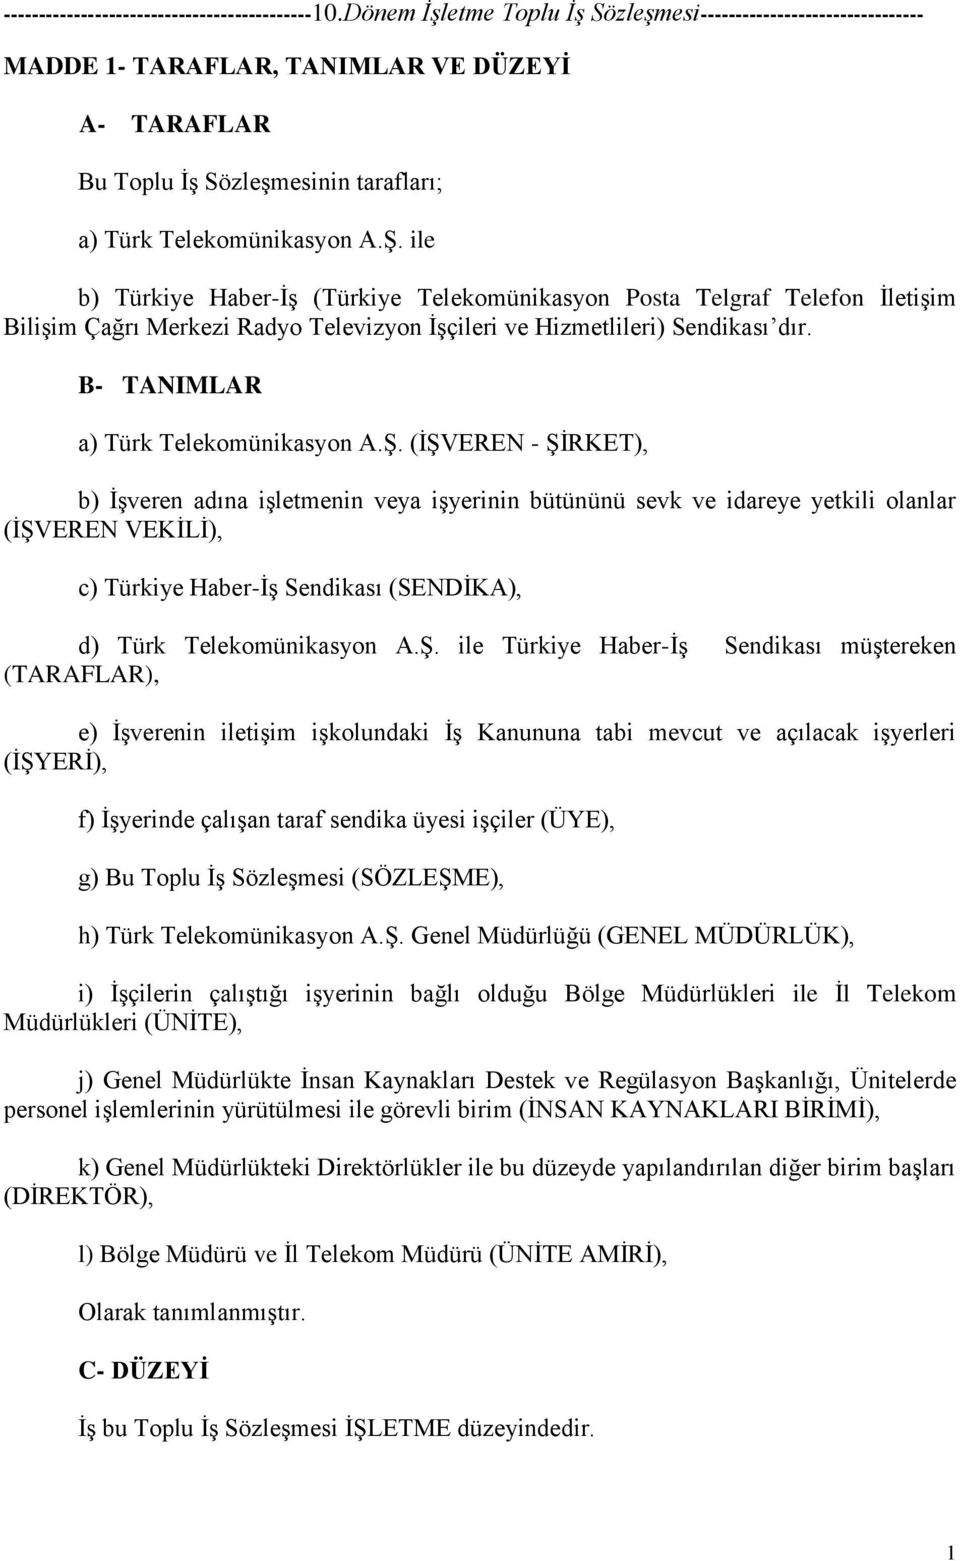 Ş. (İŞVEREN - ŞİRKET), b) İşveren adına işletmenin veya işyerinin bütününü sevk ve idareye yetkili olanlar (İŞVEREN VEKİLİ), c) Türkiye Haber-İş Sendikası (SENDİKA), d) Türk Telekomünikasyon A.Ş. ile